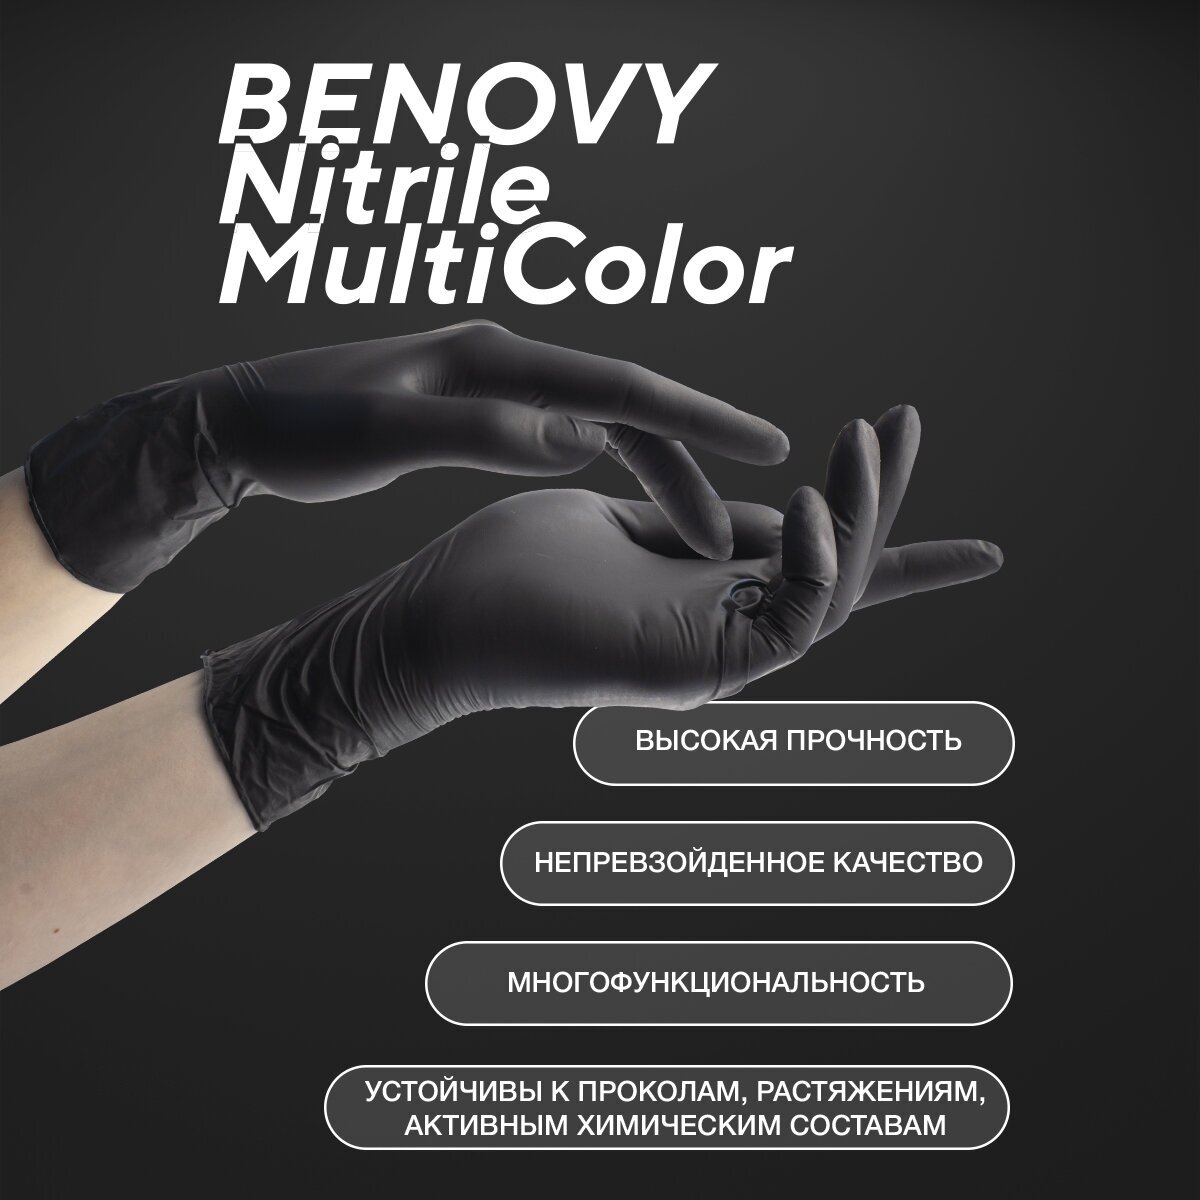 Перчатки смотровые Benovy Nitrile MultiColor текстурированные на пальцах, 50 пар, размер: XL, цвет: черный, 1 уп.